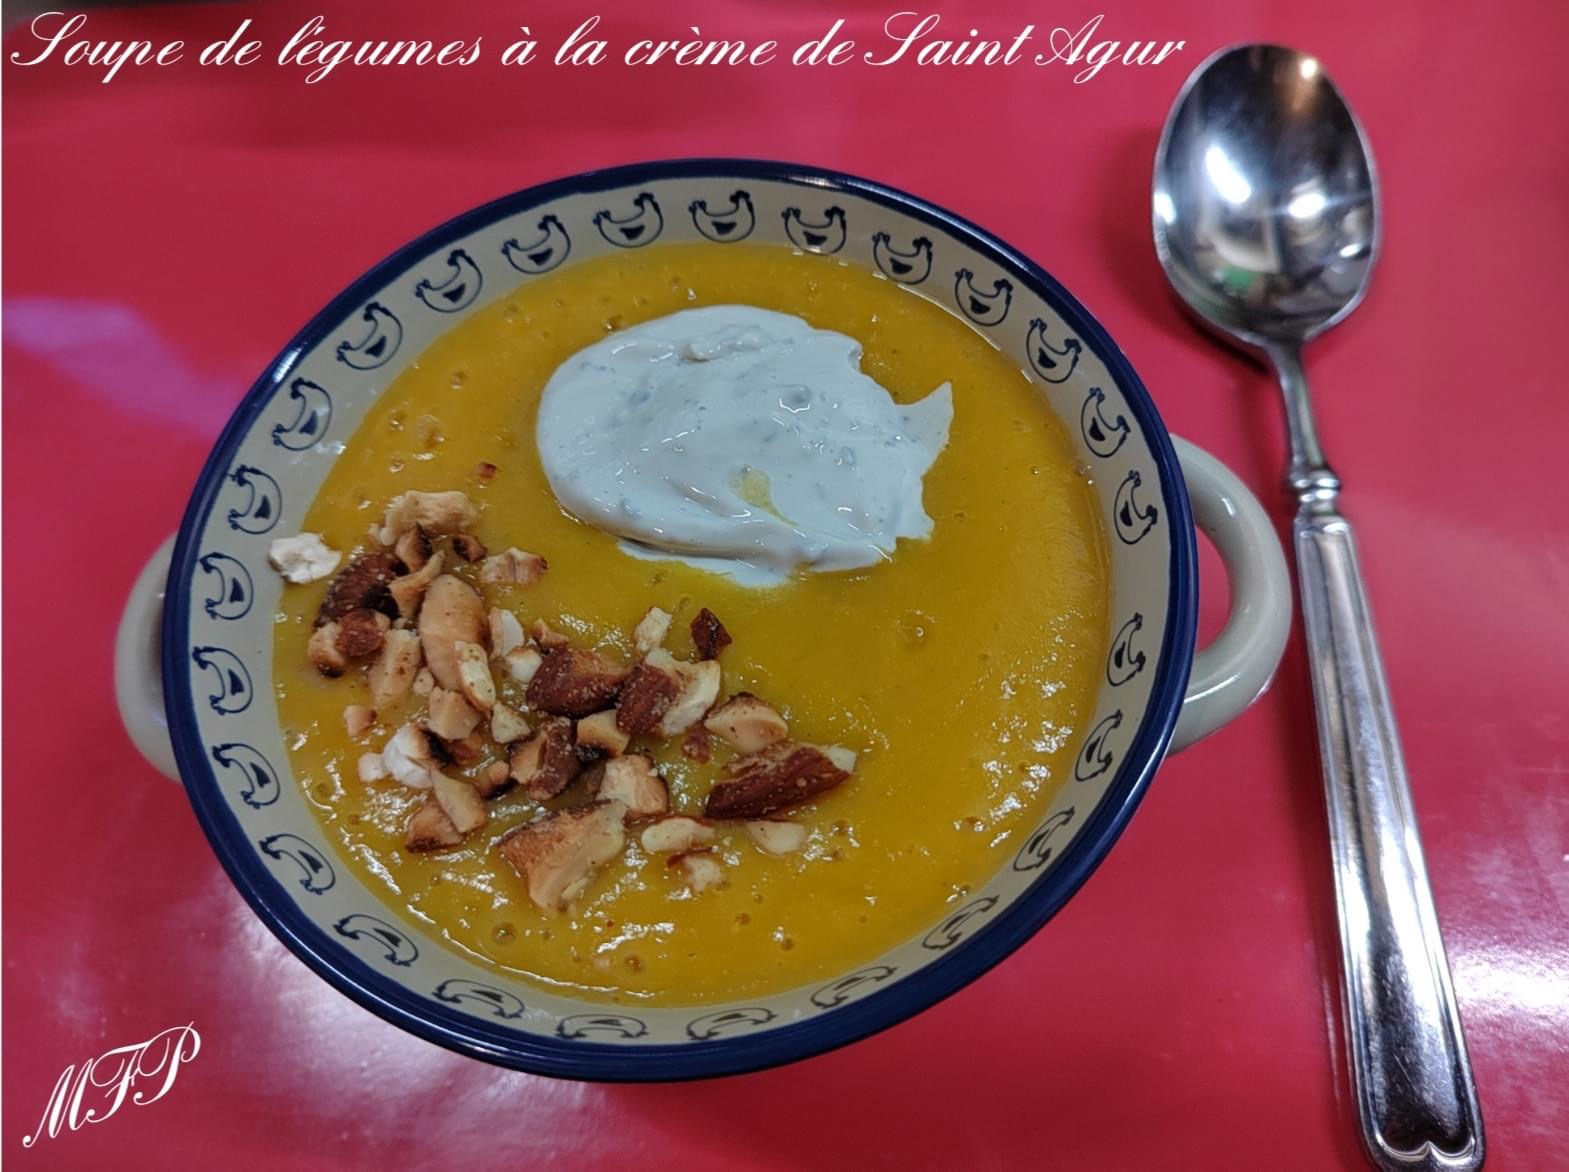 Soupe de légumes à la crème de Saint Agur